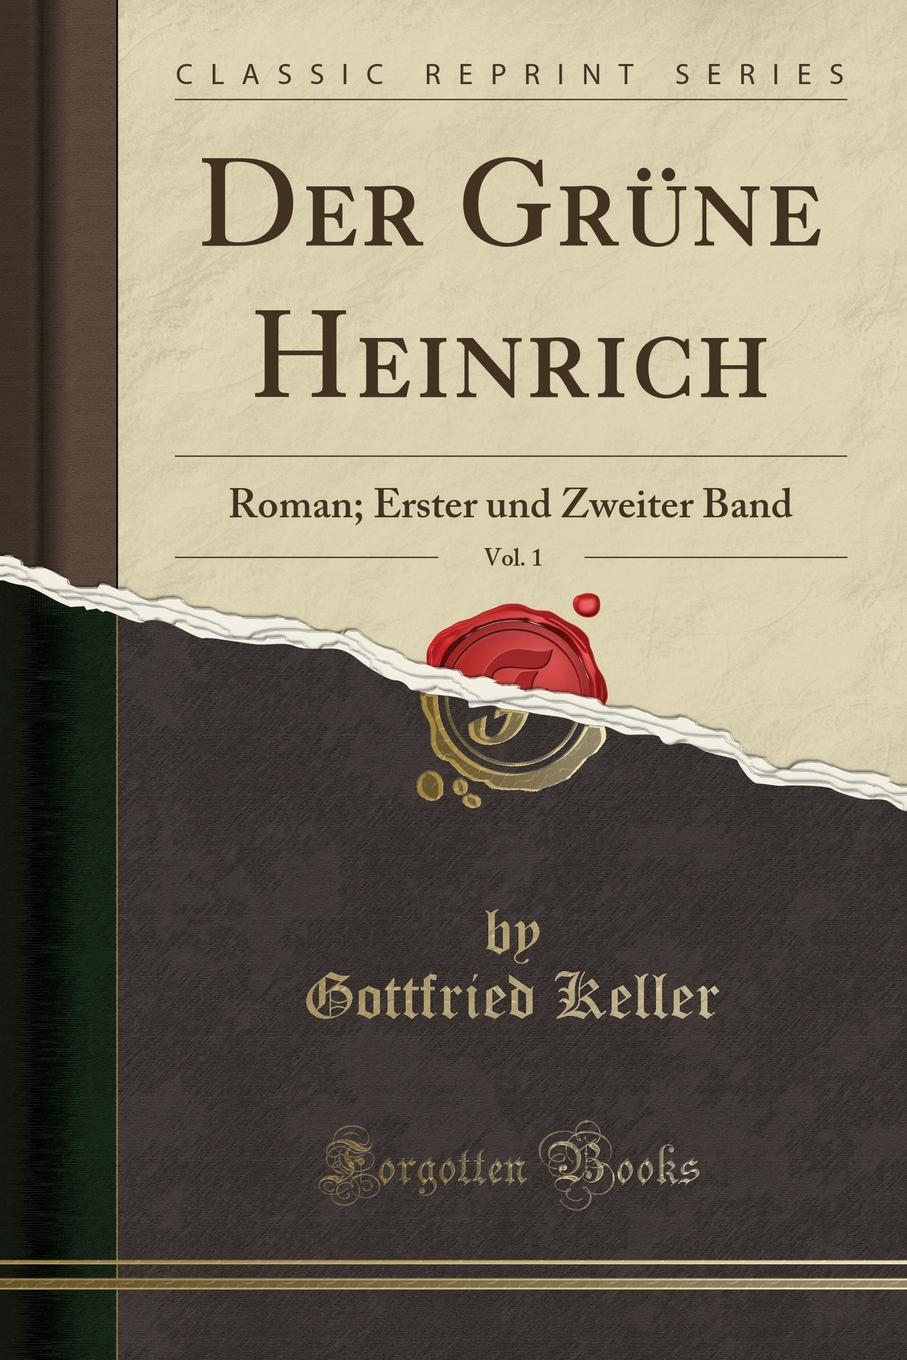 Der Grune Heinrich, Vol. 1. Roman; Erster und Zweiter Band (Classic Reprint)